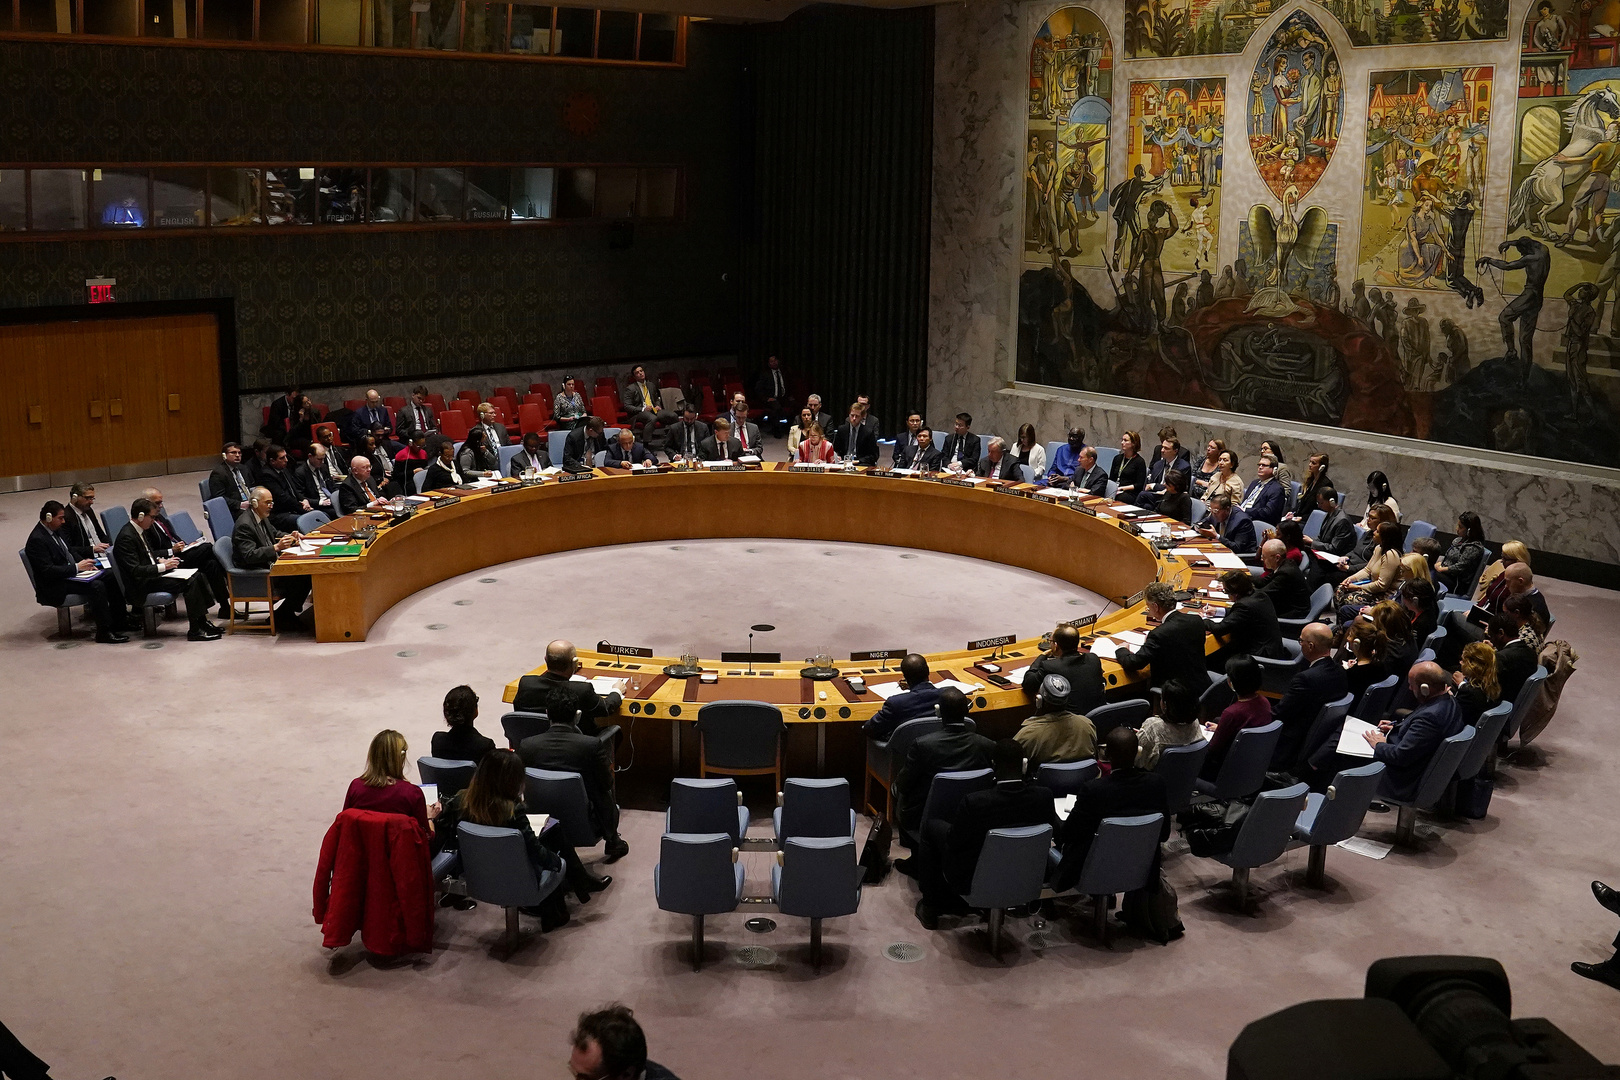 مجلس الأمن الدولي يدعو لالتزام كامل بوقف إطلاق النار بين الفصائل الفلسطينية وإسرائيل